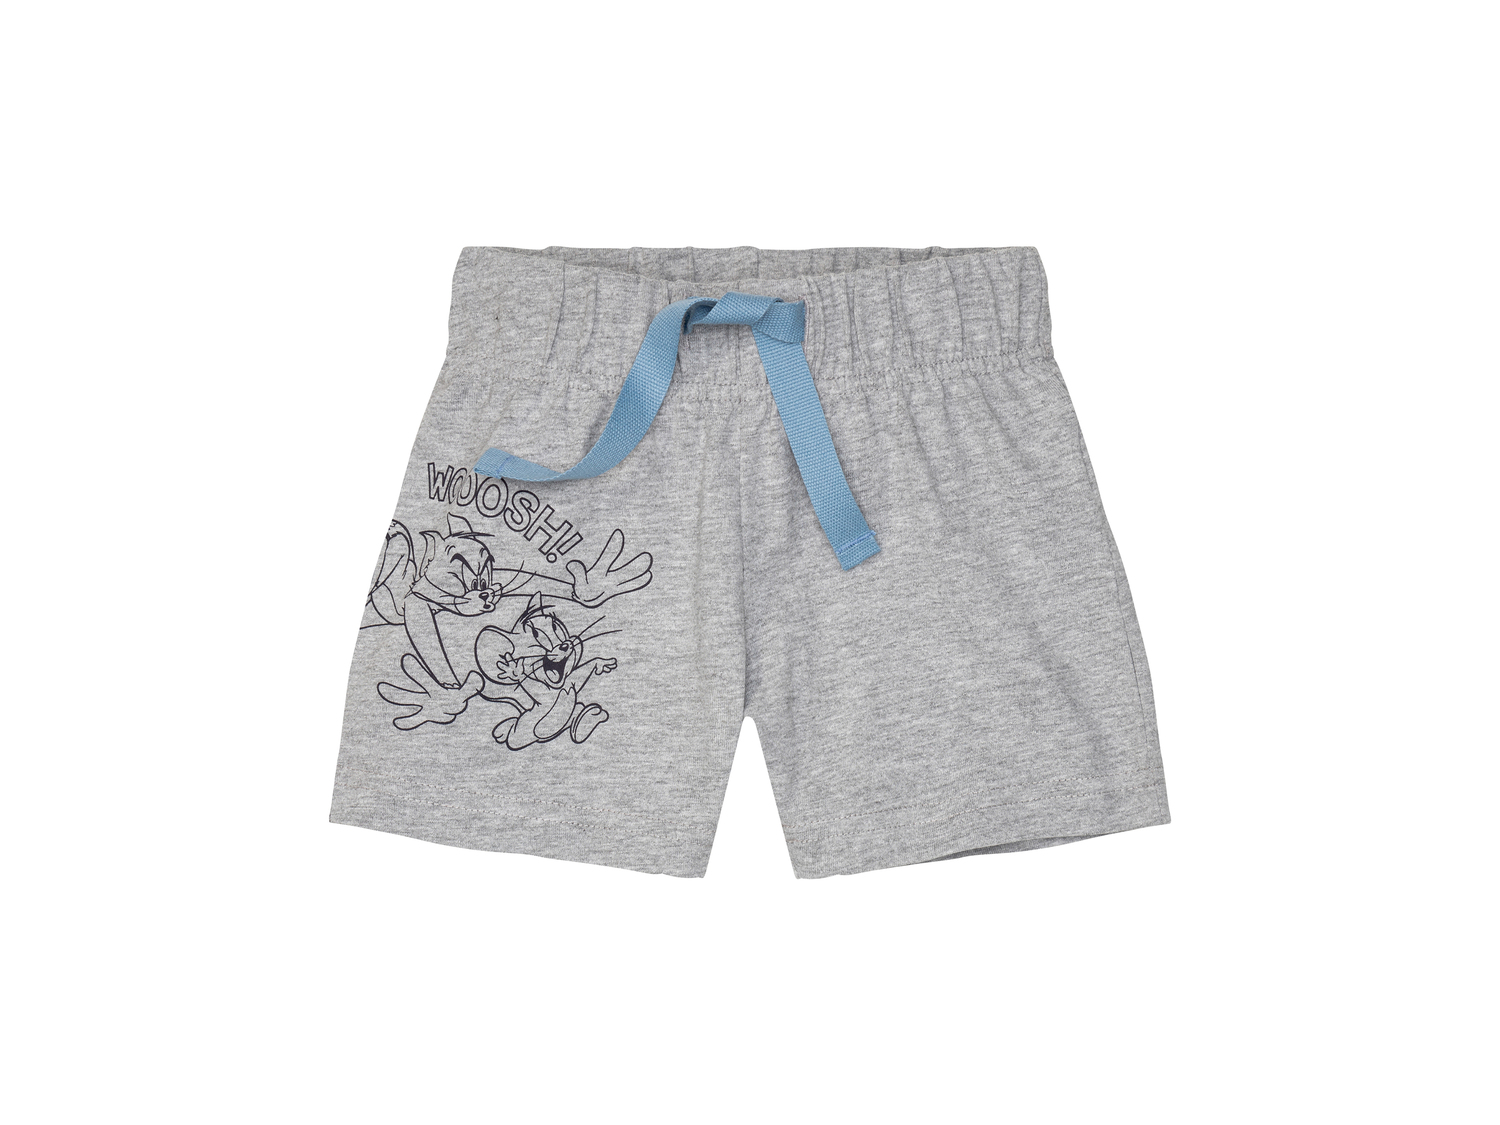 Shorts da bambino Tom-and-jerry, prezzo 4.99 &#8364; 
Misure: 1-6 anni 
- Puro ...